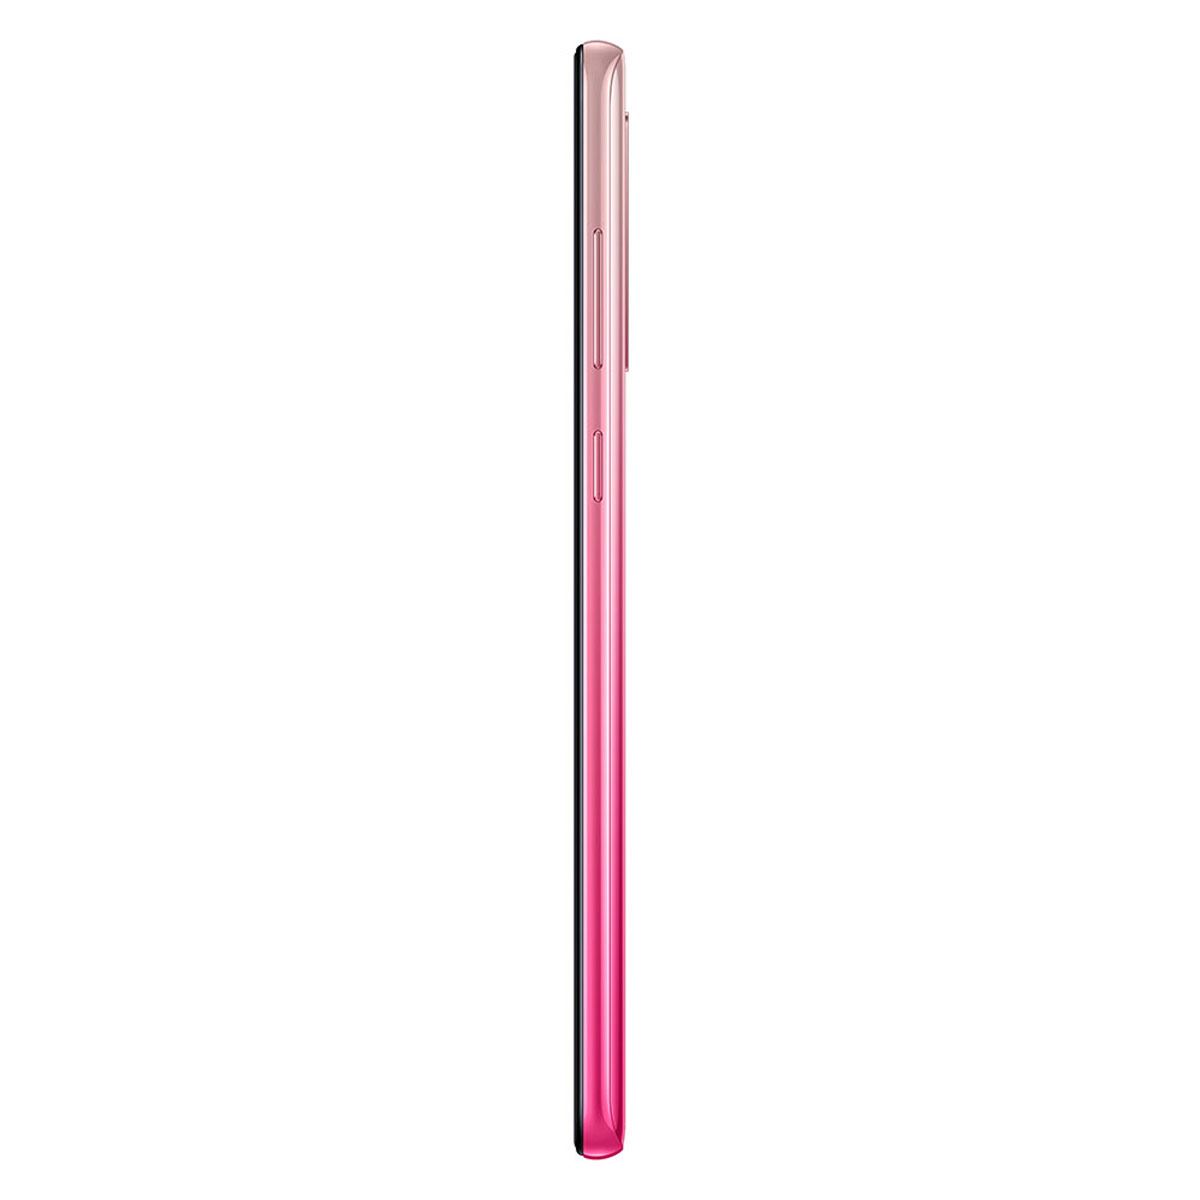 Celular Samsung A920F Galaxy A9 128GB Color Rosa R9 (Telcel)